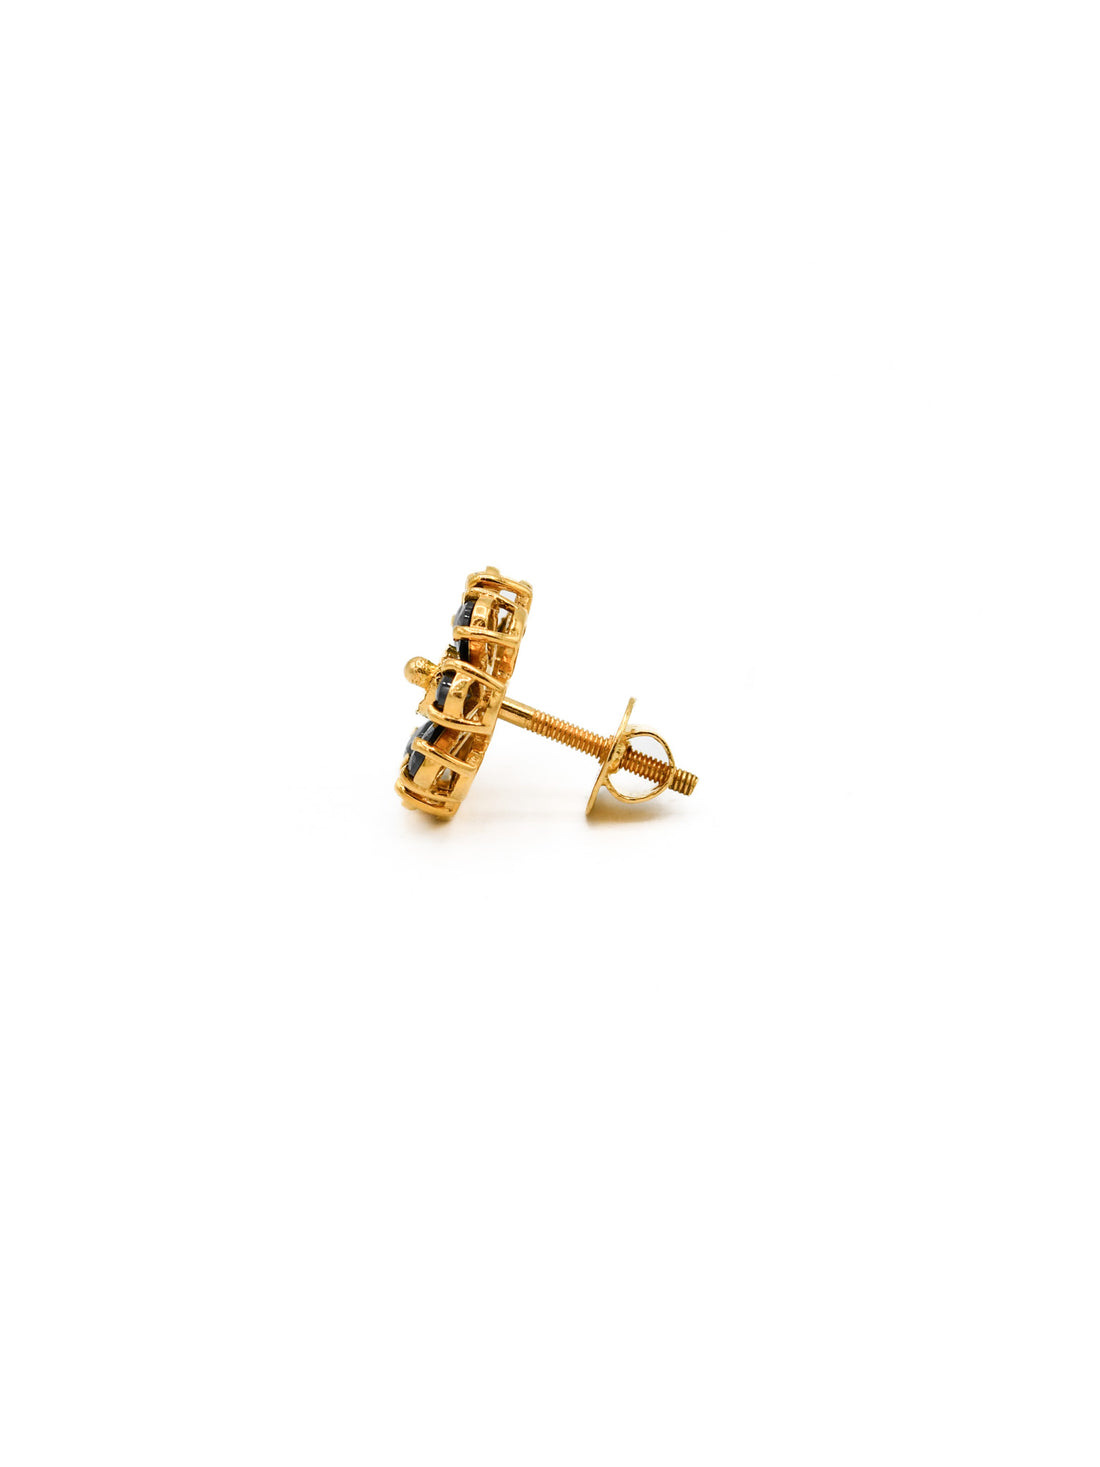 22ct Gold Black CZ Stud Earrings - Roop Darshan